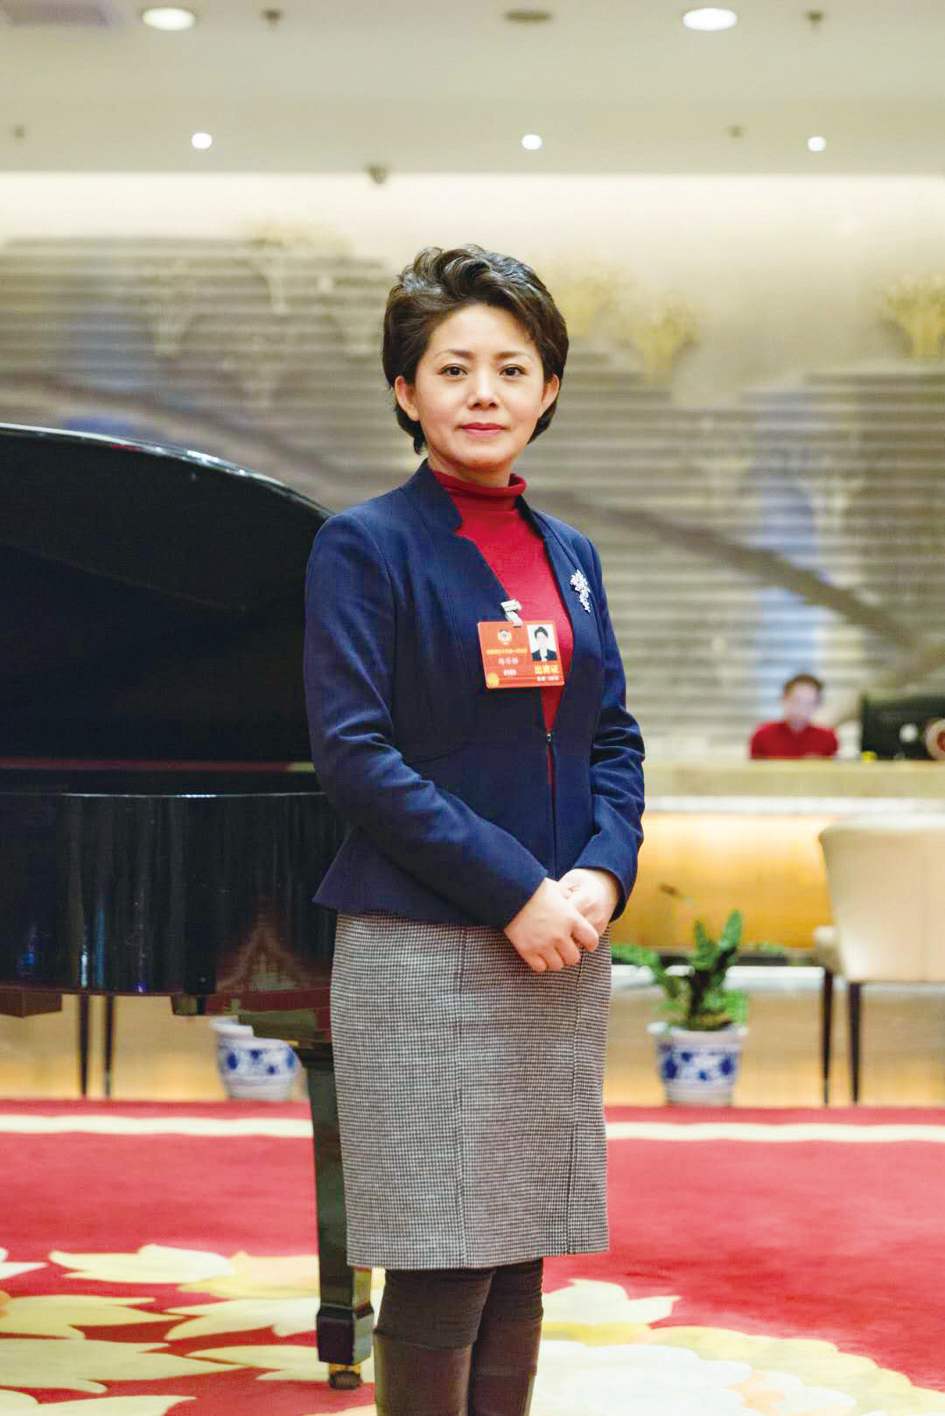 第十三届全国政协委员,吉林省文化和旅游厅厅长杨安娣一直处于忙碌中